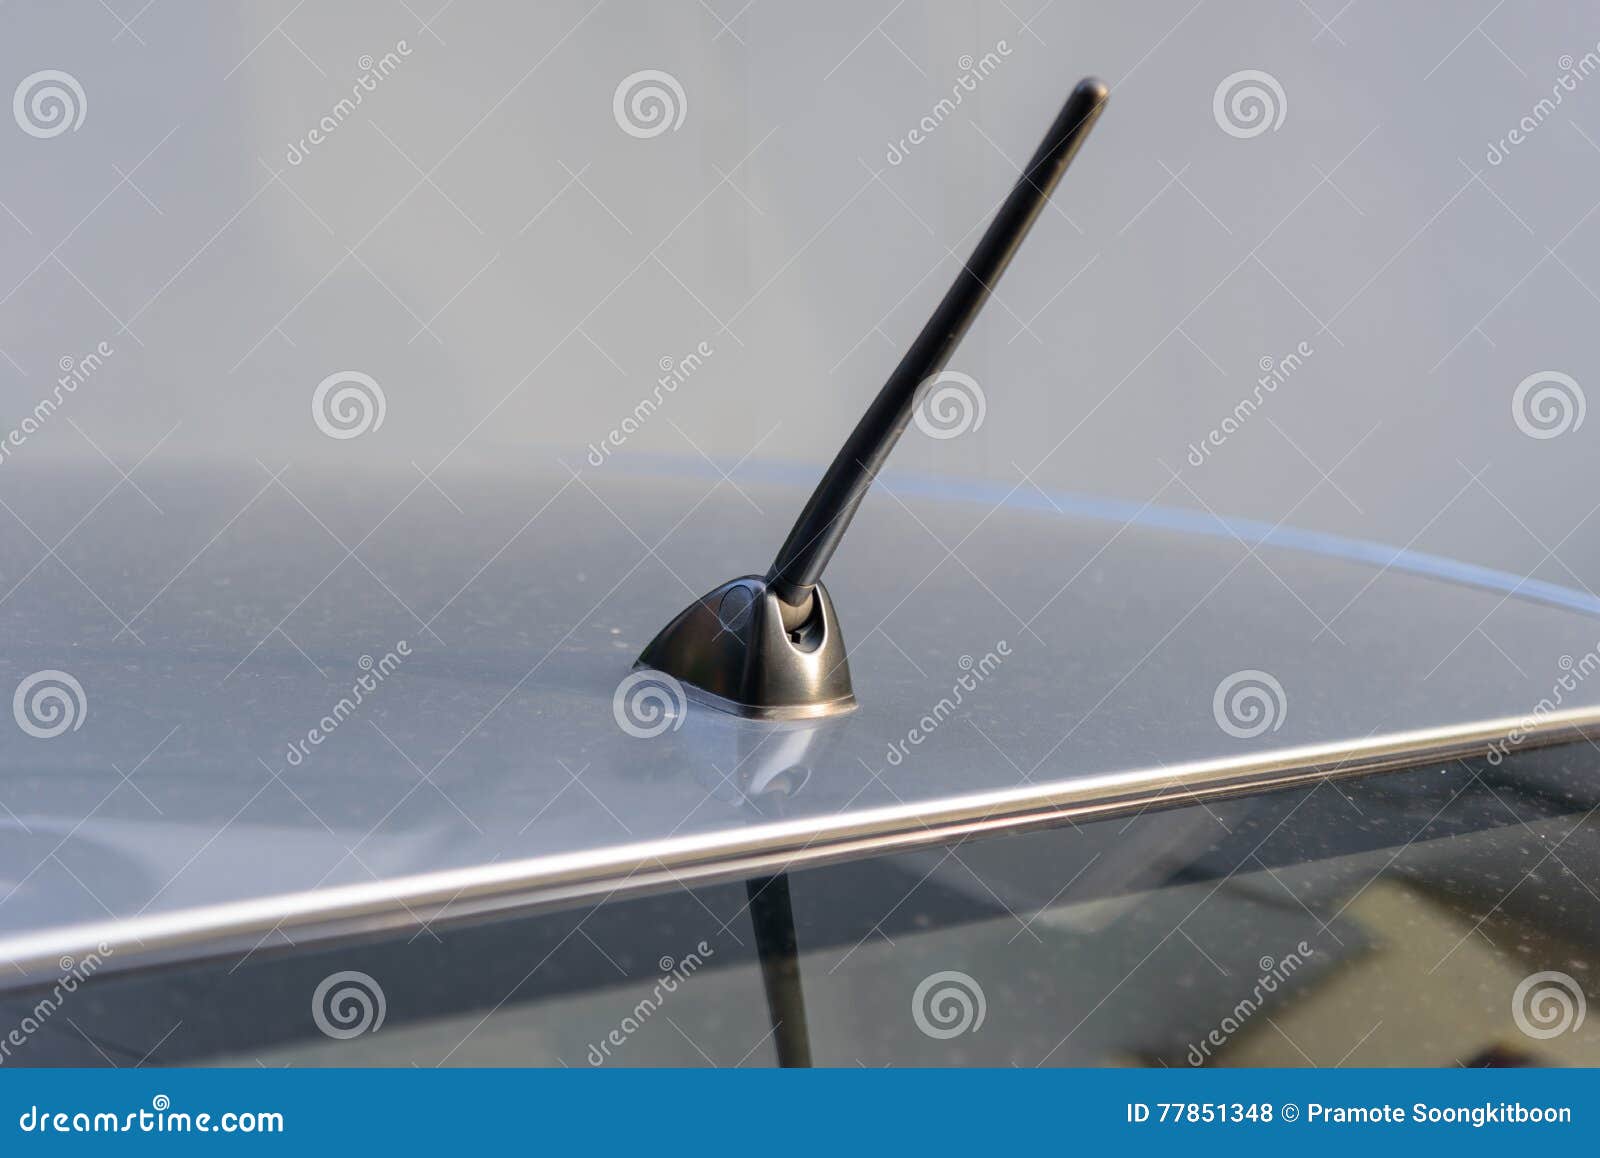 Autoantenne stockfoto. Bild von haifisch, metall, form - 77851348